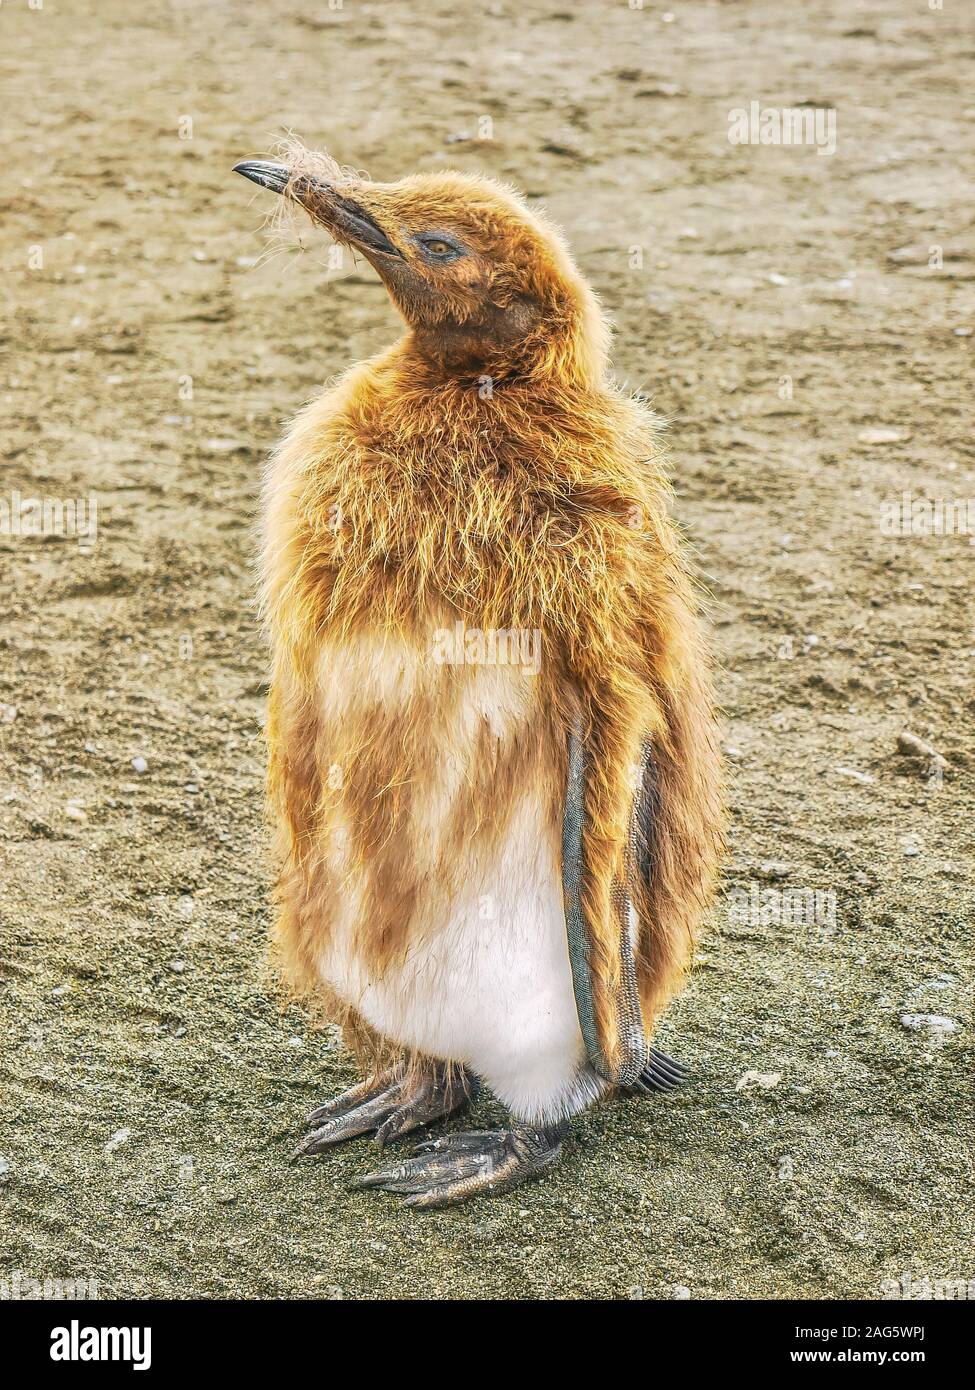 Un gros plan d'un jeune manchot royal (Aptenodytes patagonicus) de mettre son manteau marron vers le bas pour révéler son plumage d'adulte. L'île de Géorgie du Sud. Banque D'Images